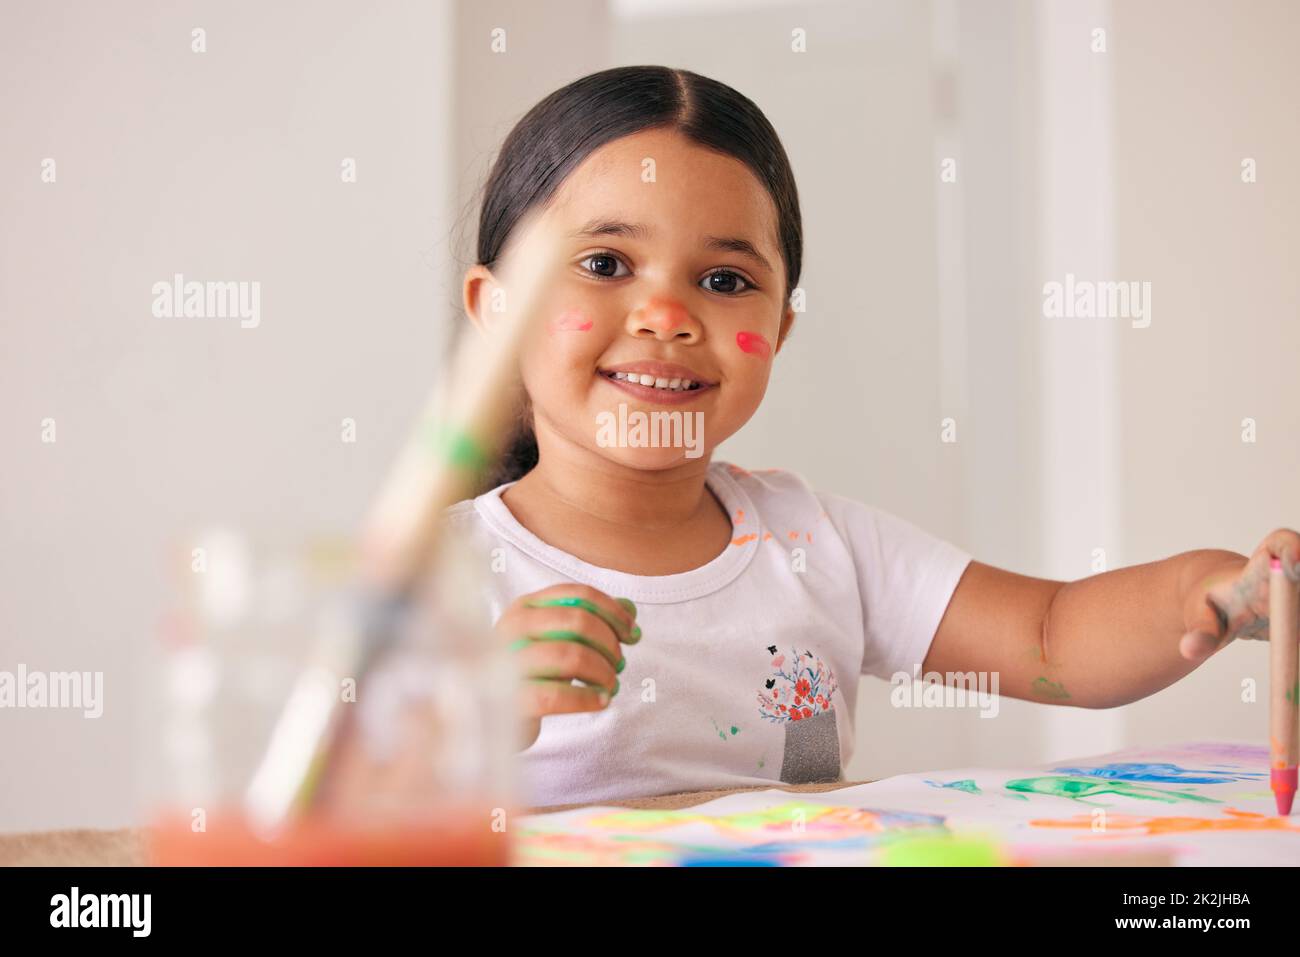 Lassen Sie sie sich durch Kunst ausdrücken. Aufnahme eines entzückenden kleinen Mädchenbildes, während Sie an einem Tisch sitzen. Stockfoto